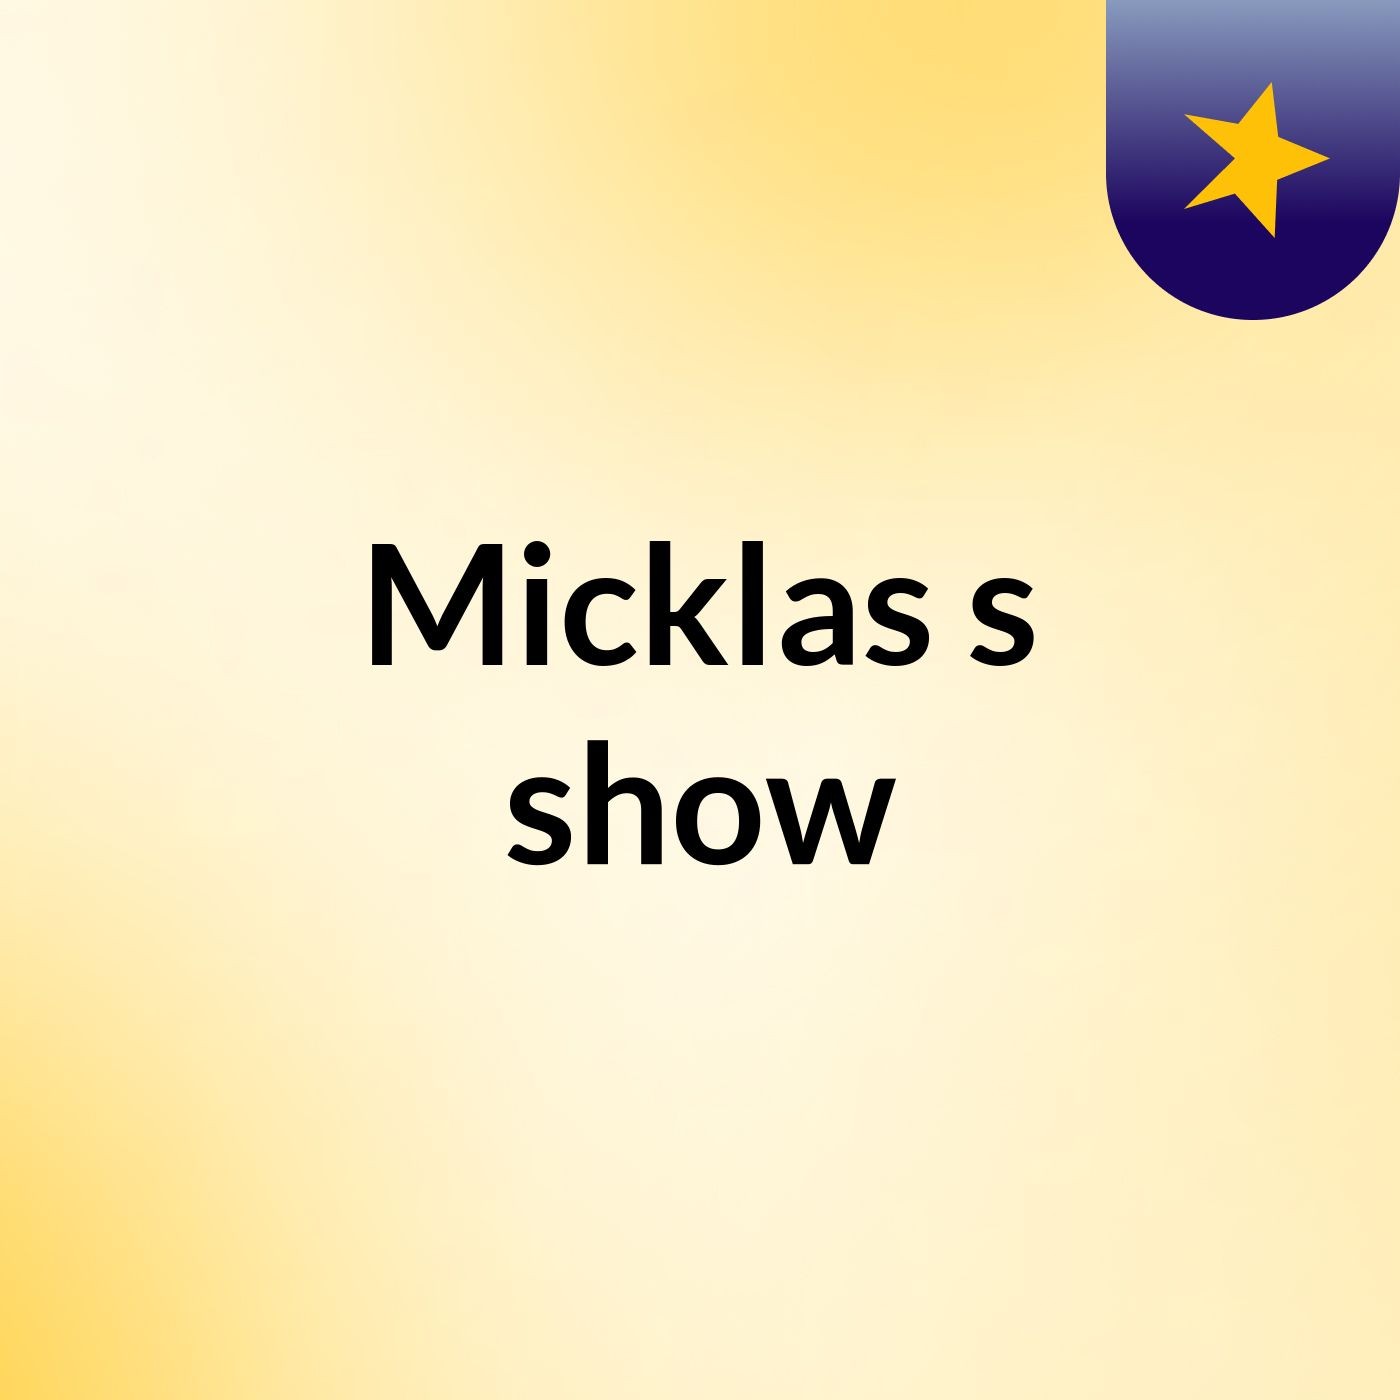 Micklas's show